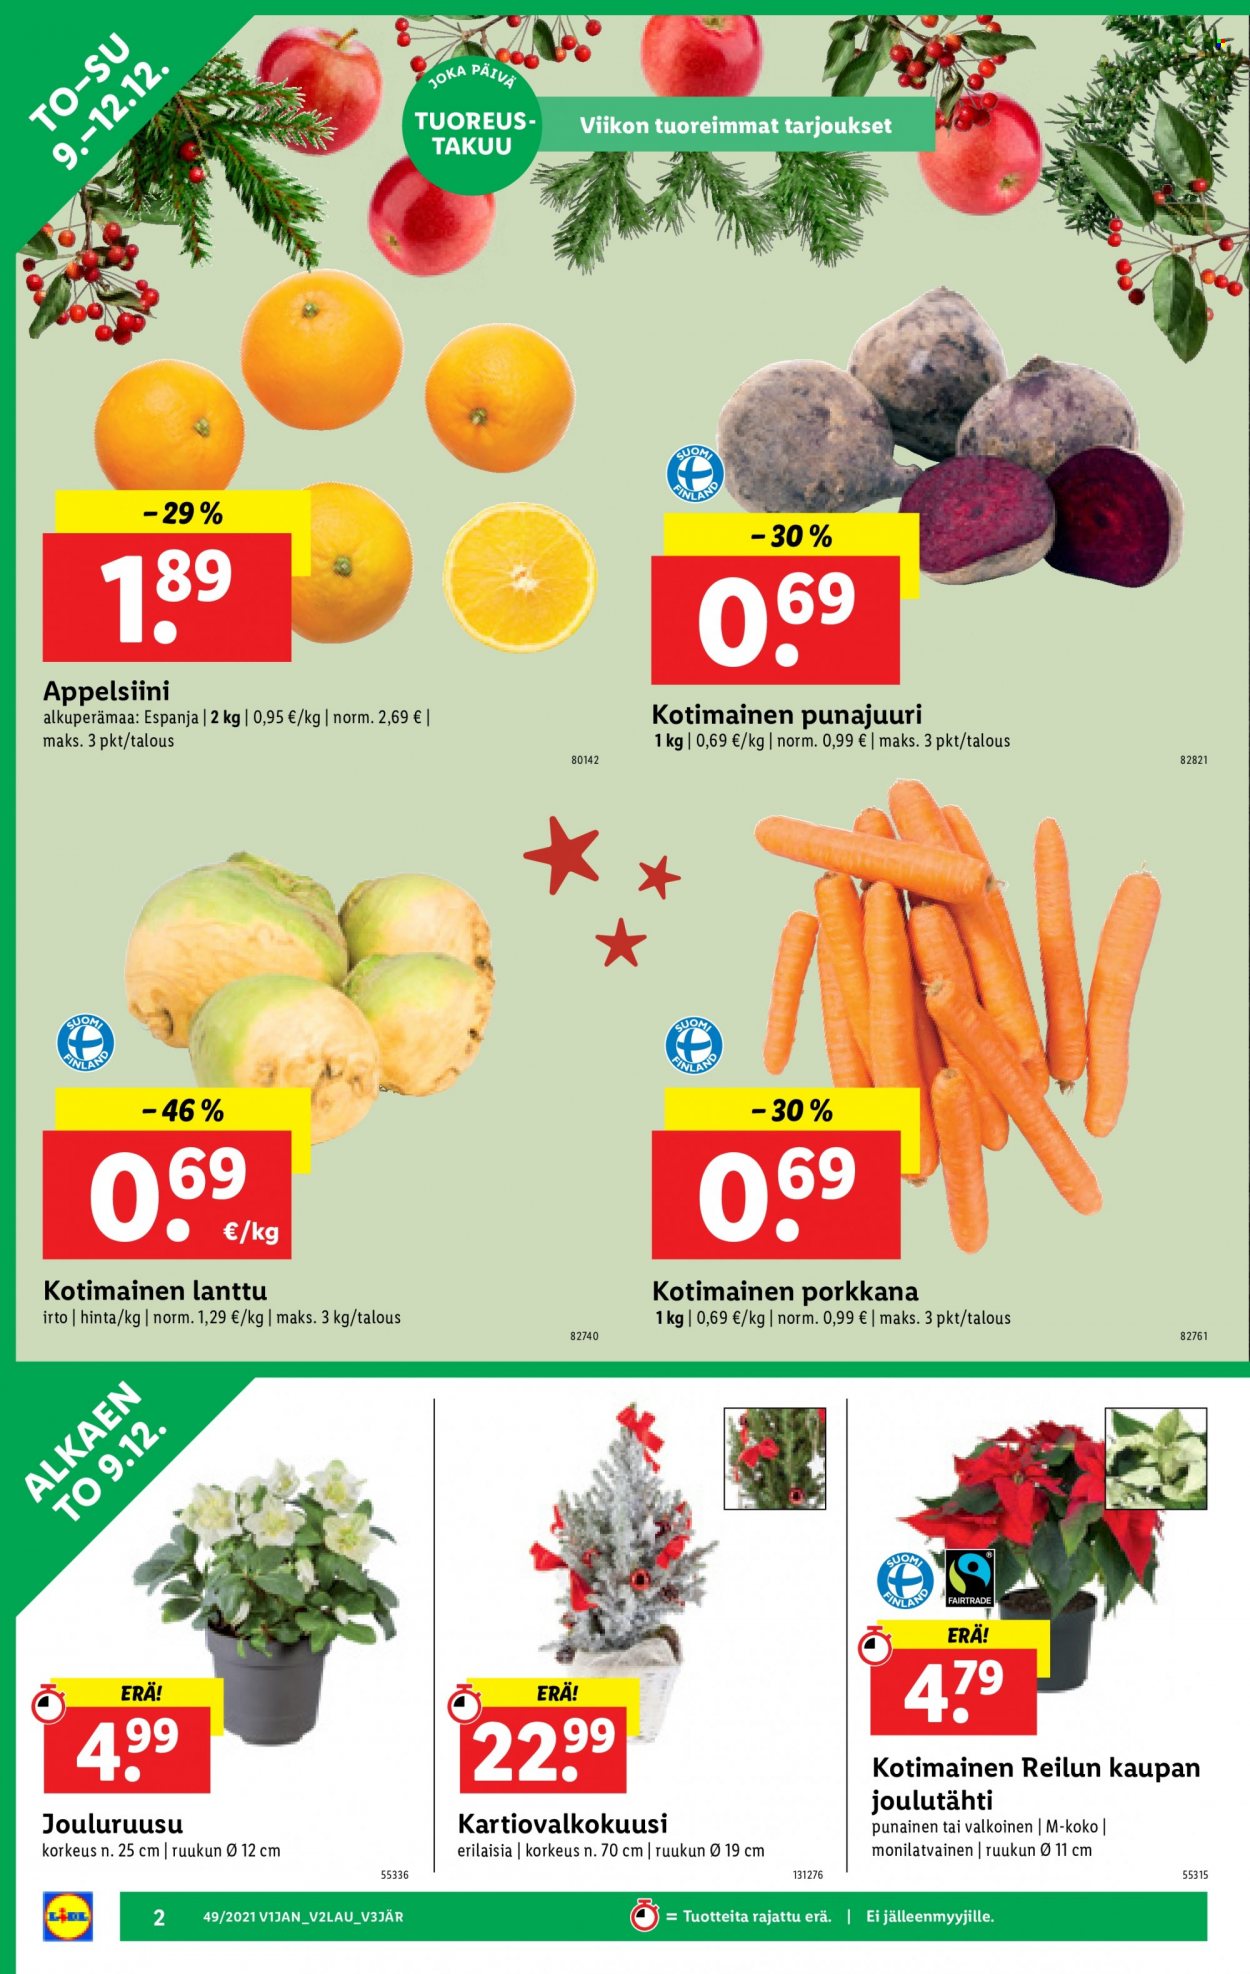 thumbnail - Lidl tarjoukset  - 09.12.2021 - 15.12.2021 - Tarjoustuotteet - porkkana, punajuuri. Sivu 2.